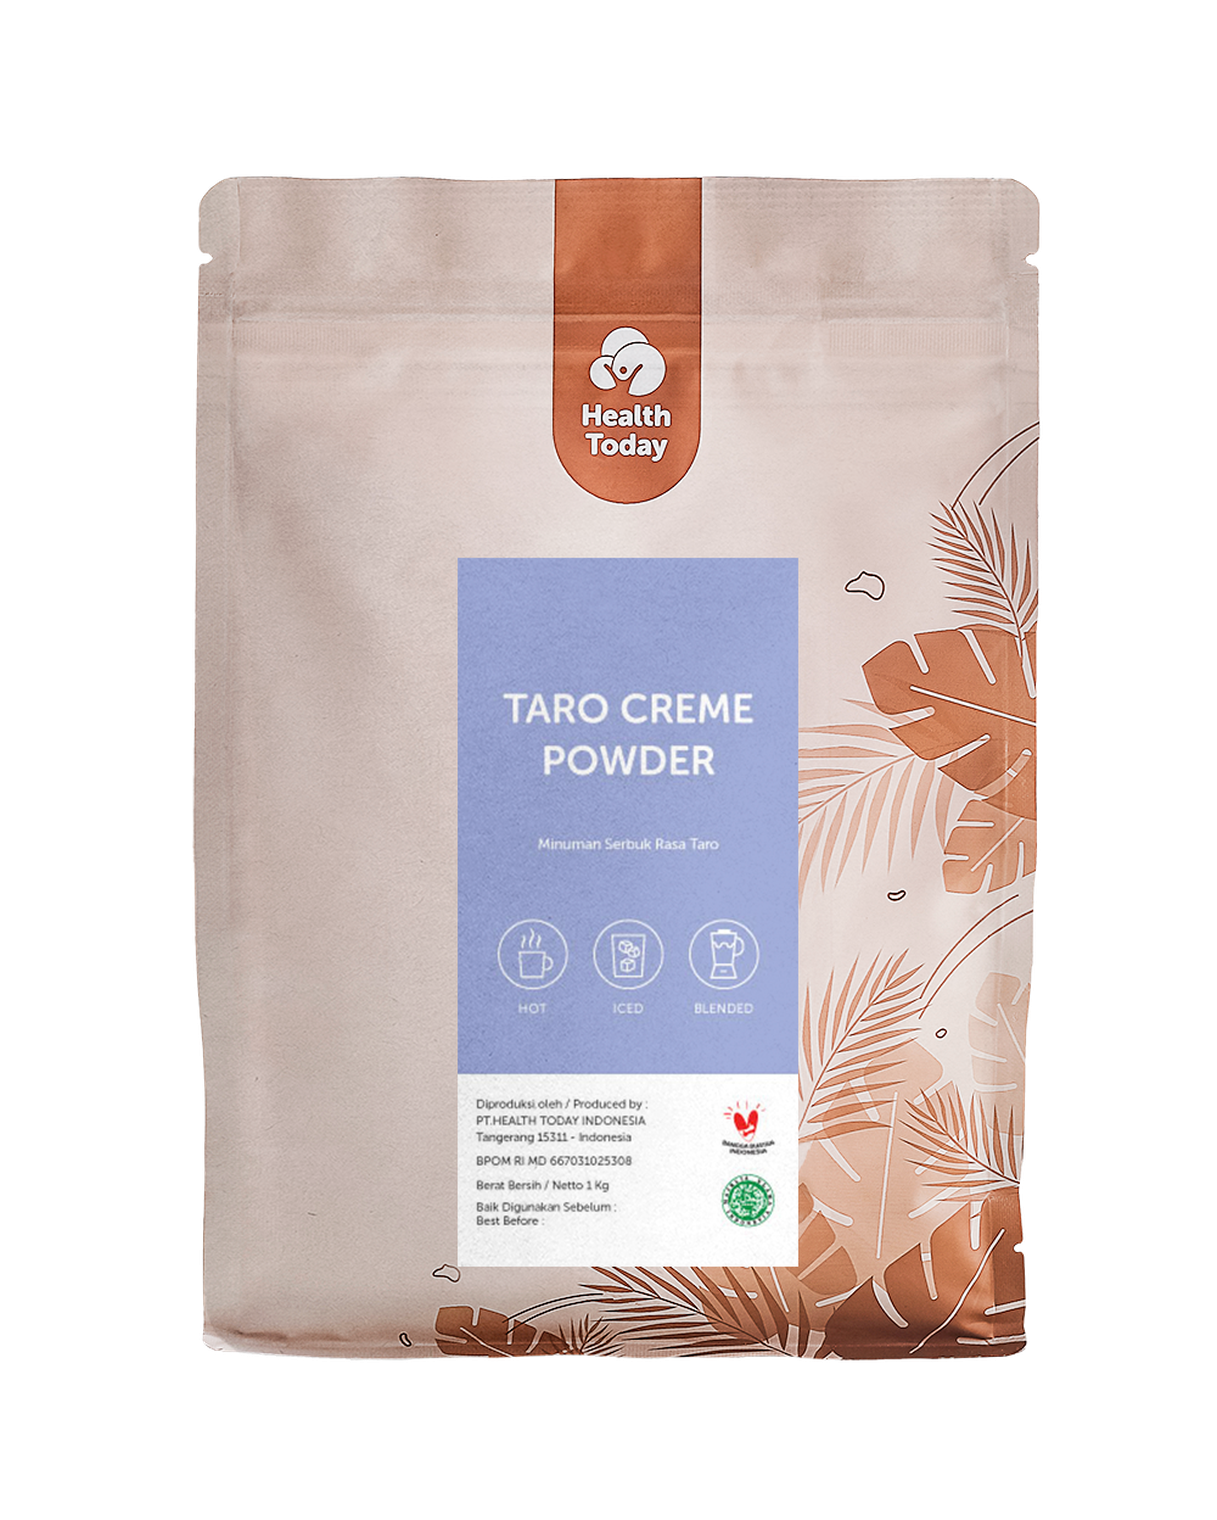 Taro Creme Powder main image